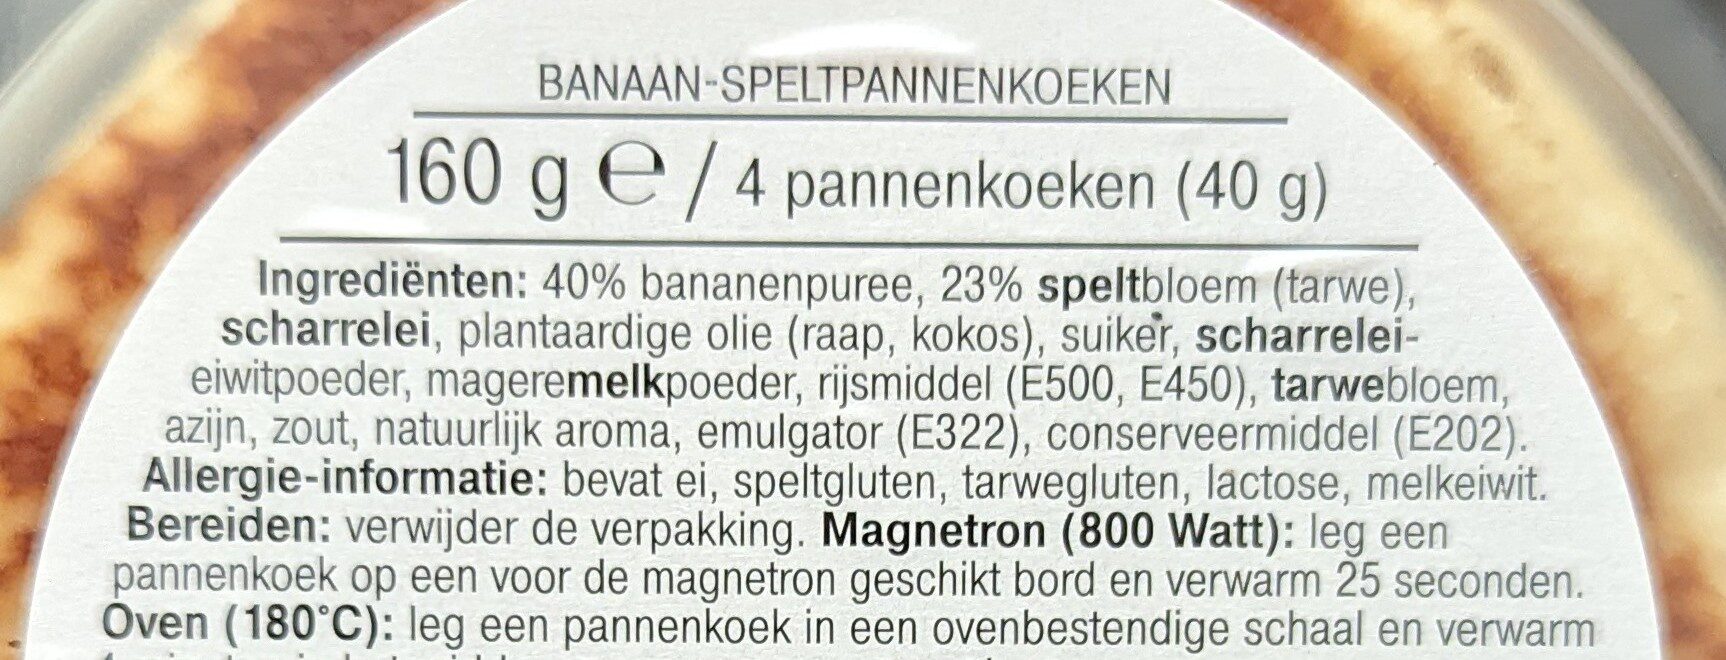 Banaan speltpannenkoek - Ingredients